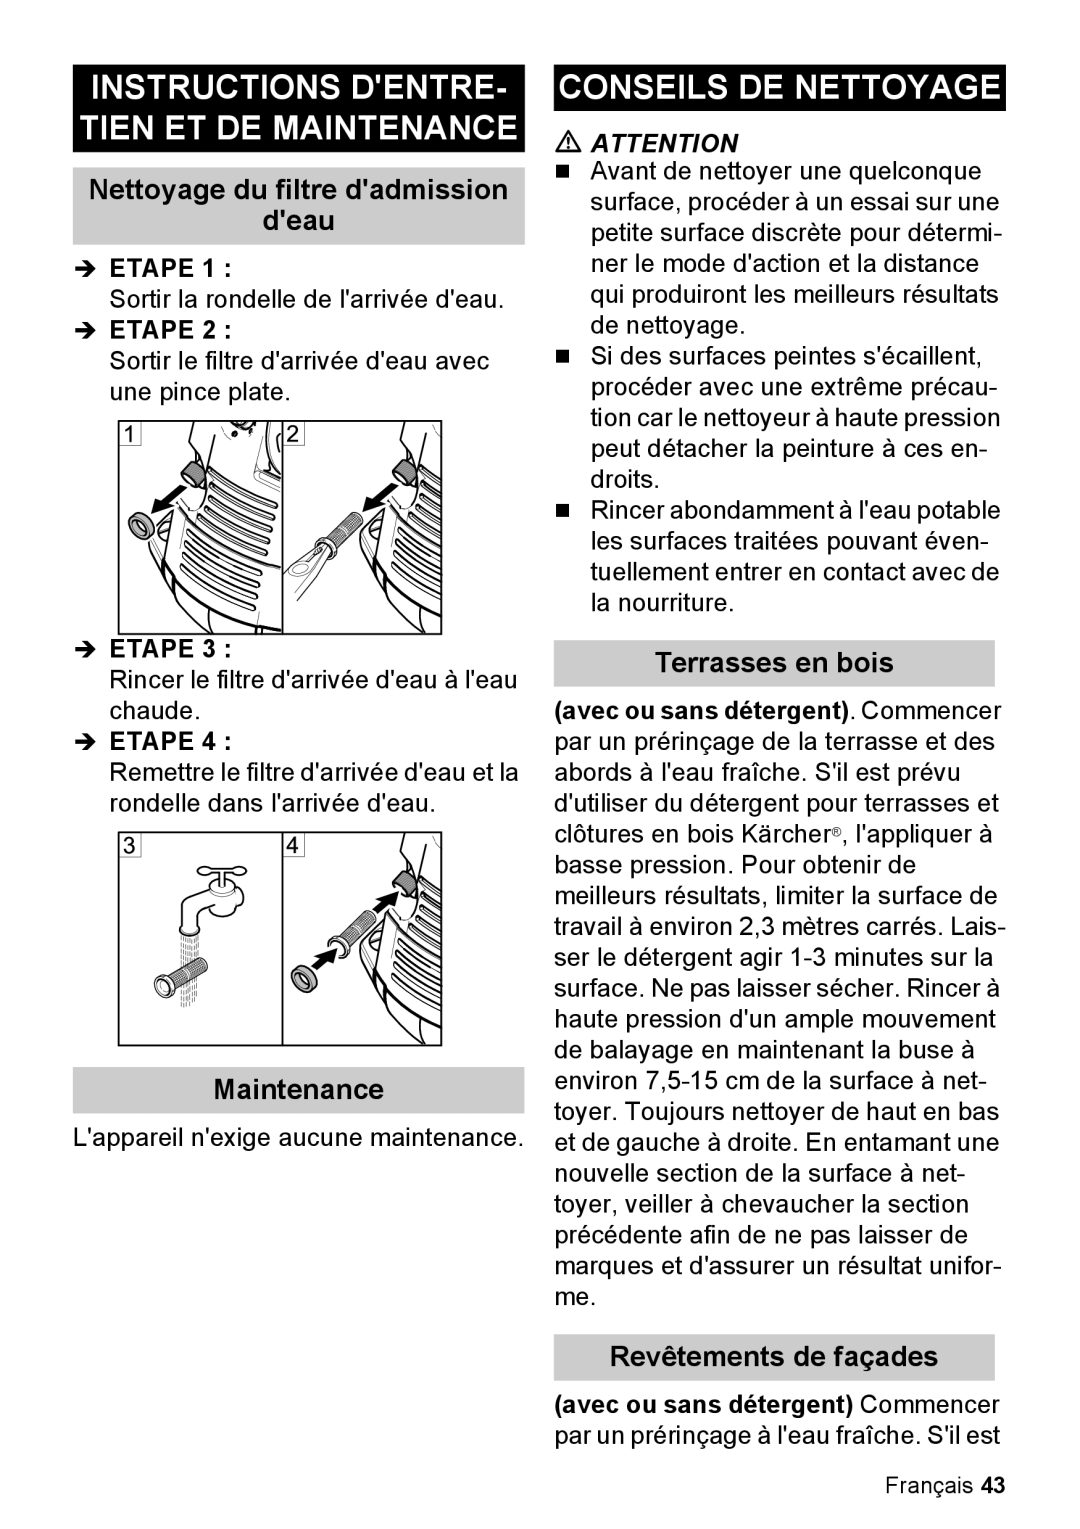 Karcher K 5.85 M Instructions Dentre- Tien Et De Maintenance, Conseils De Nettoyage, Nettoyage du filtre dadmission deau 